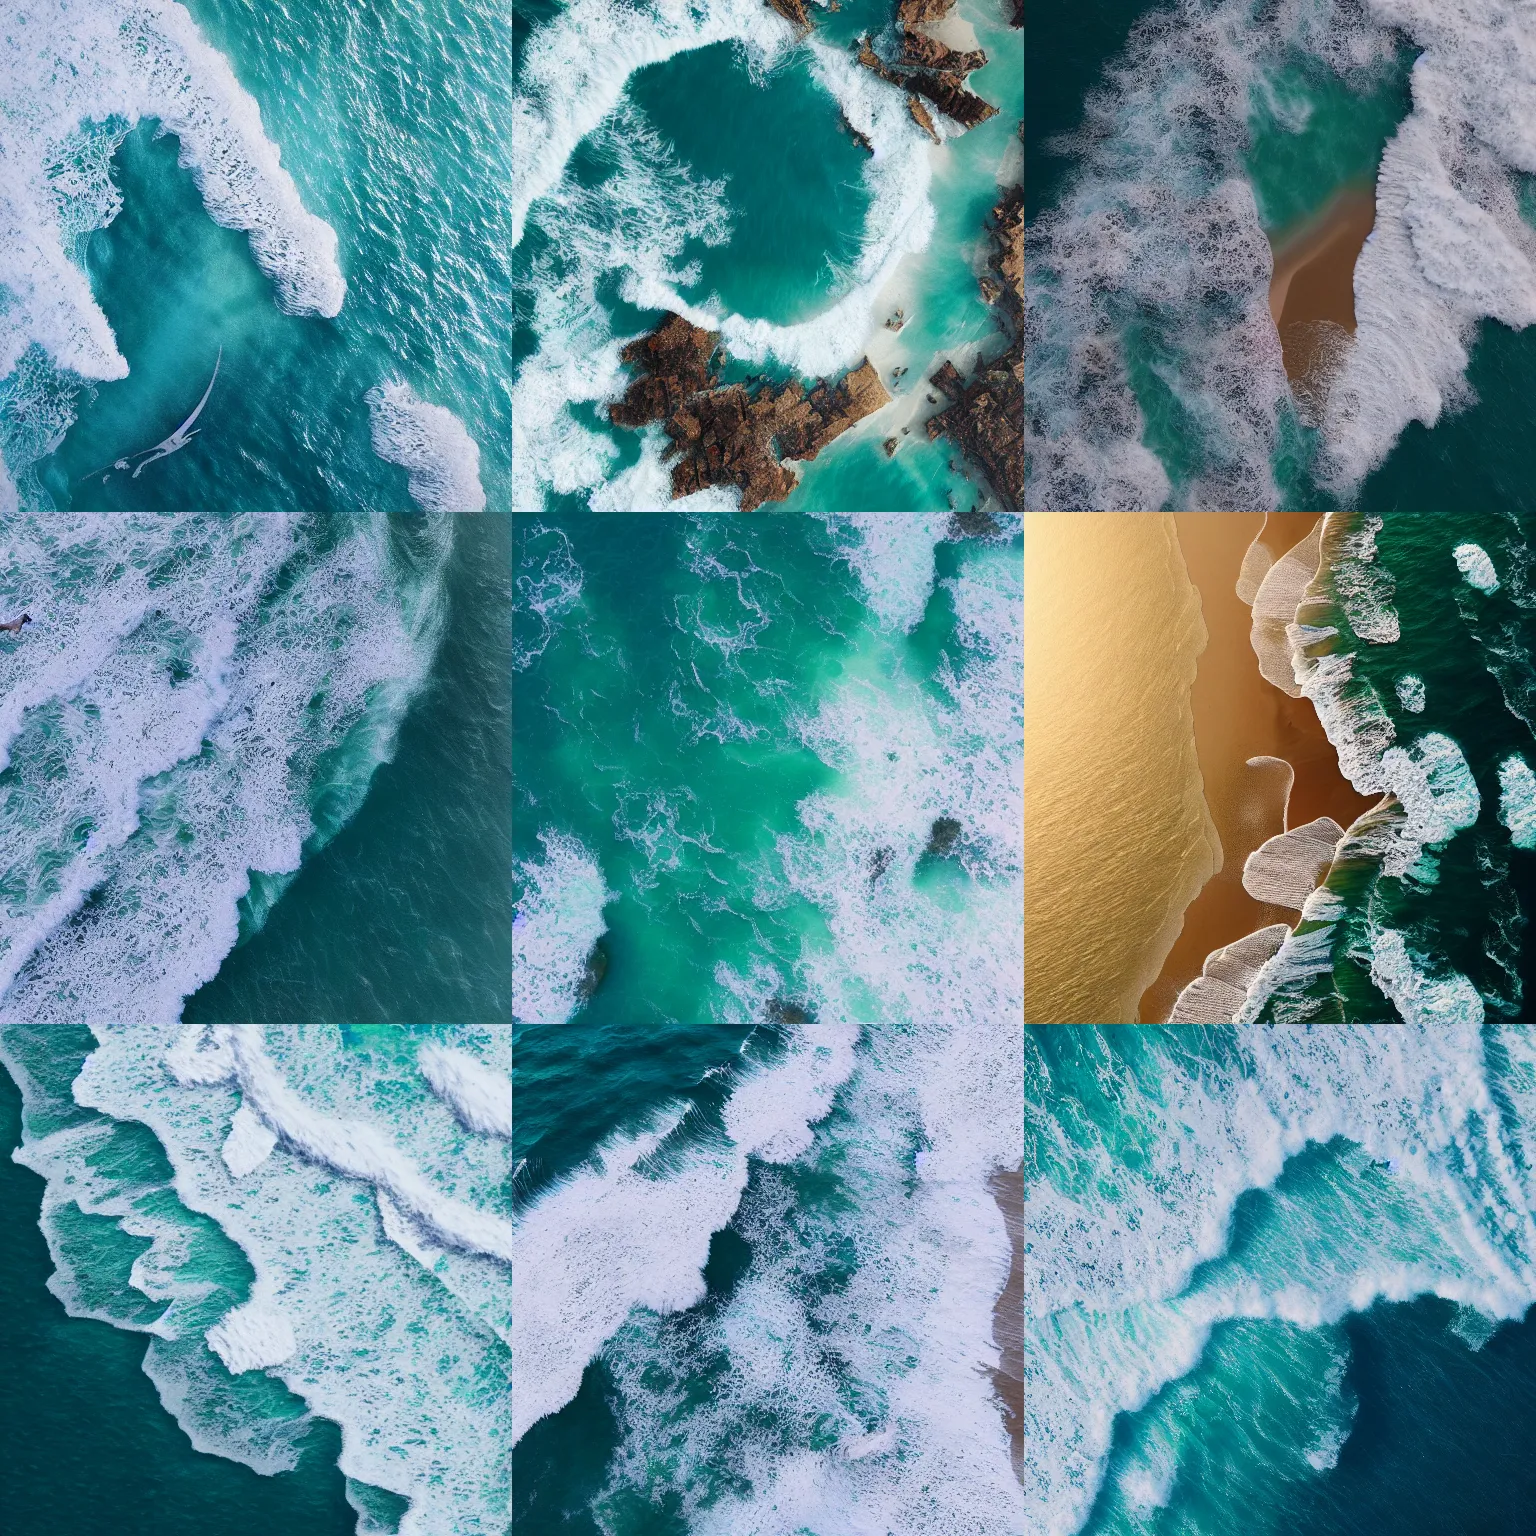 Prompt: bird's eye view of ocean, many islands, foamy waves, by WLOP, high realism, Artstation